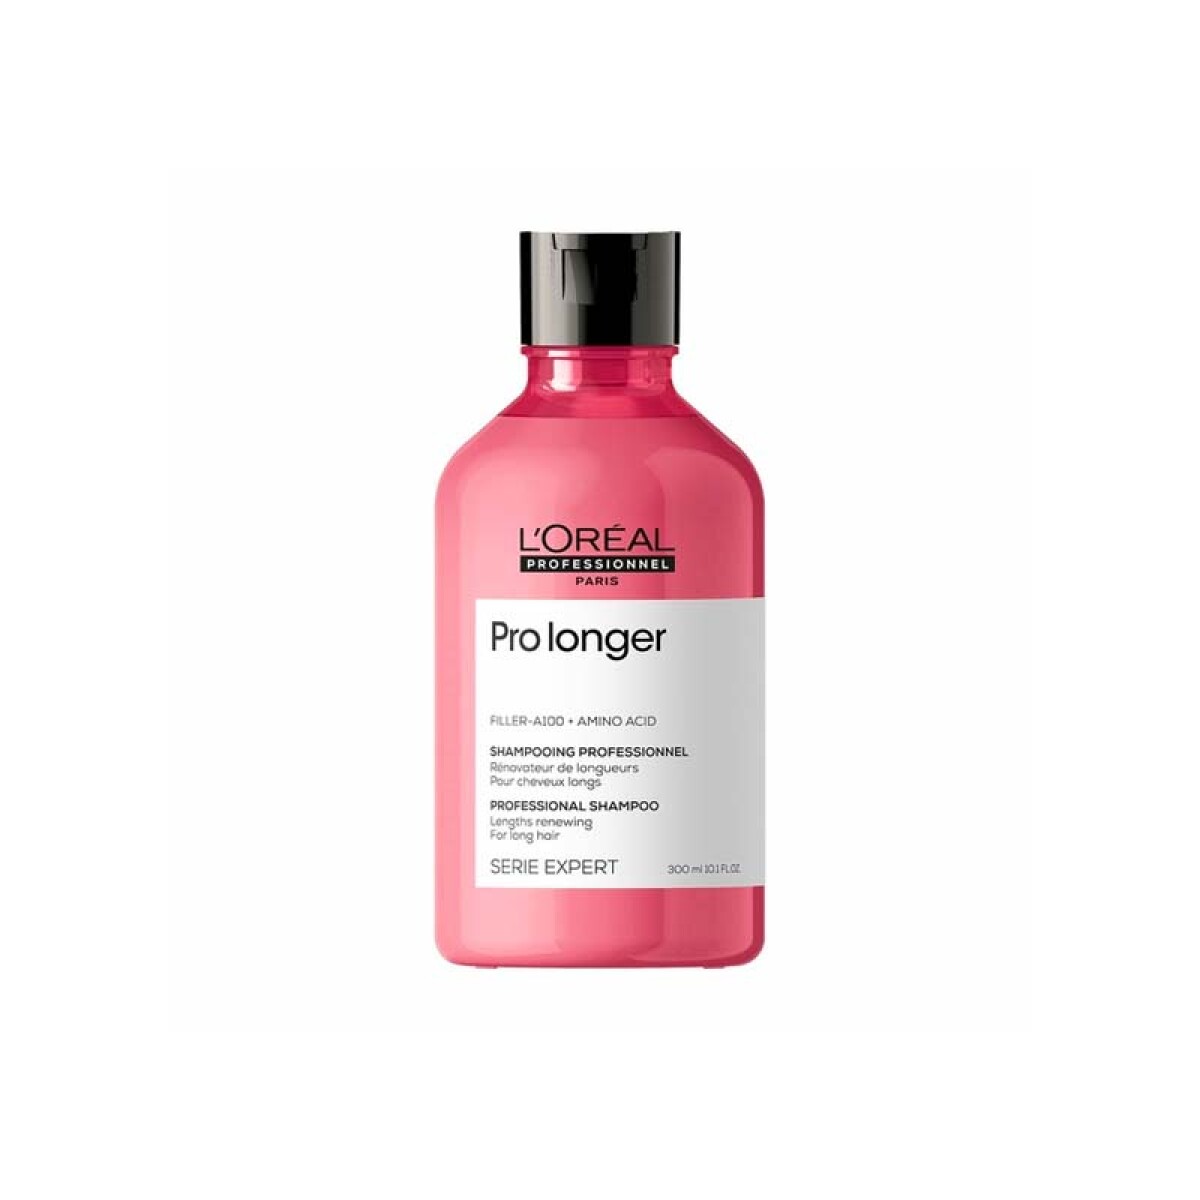 Shampoo L'Oréal Professionnel Prolonger - 300 ml 